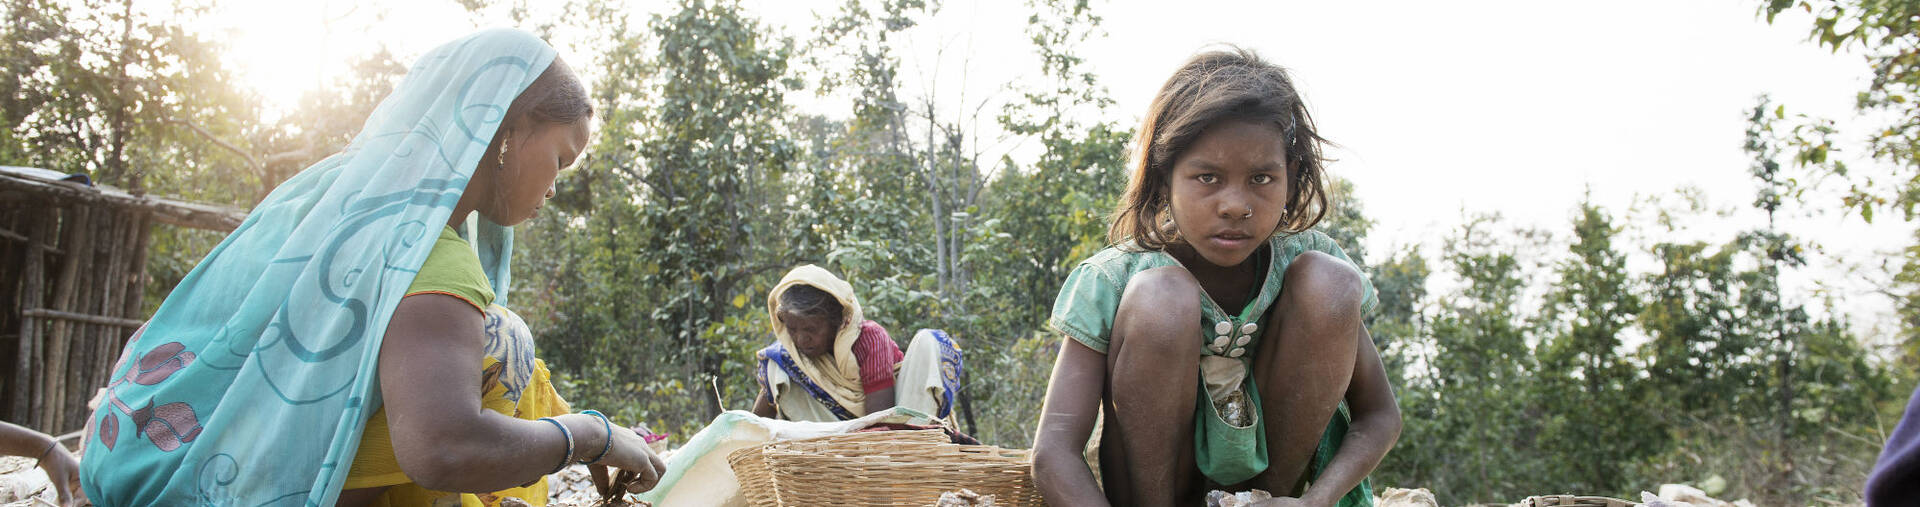 Kinderarbeit in Indien: Drei Kinder sitzen zwischen Steinen und Körben, um das Mineral Mica zu sortieren.